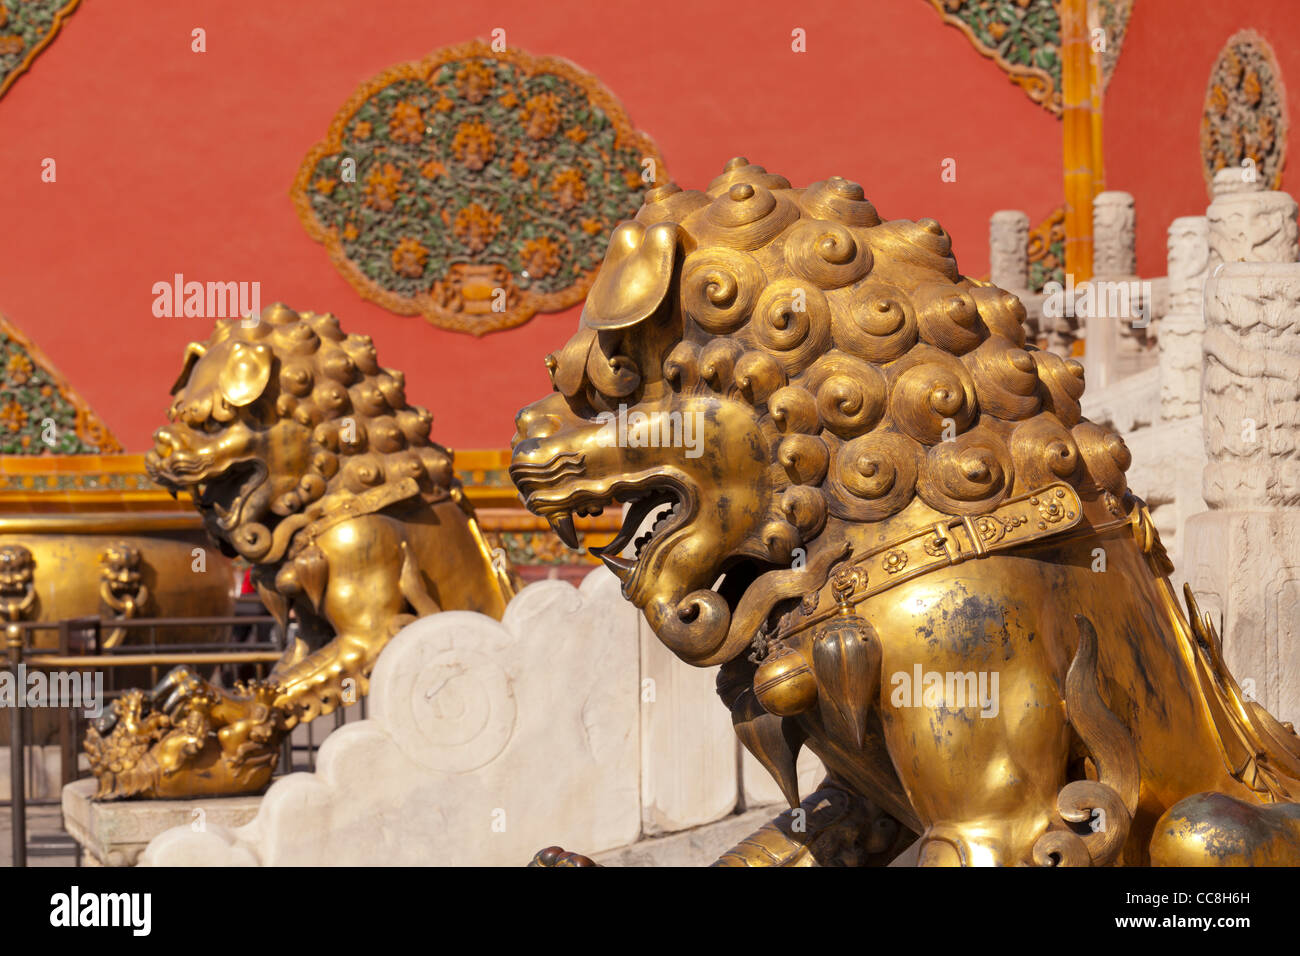 León de Bronce y león en la puerta de la Pureza celestial. Ciudad Prohibida, Beijing Foto de stock